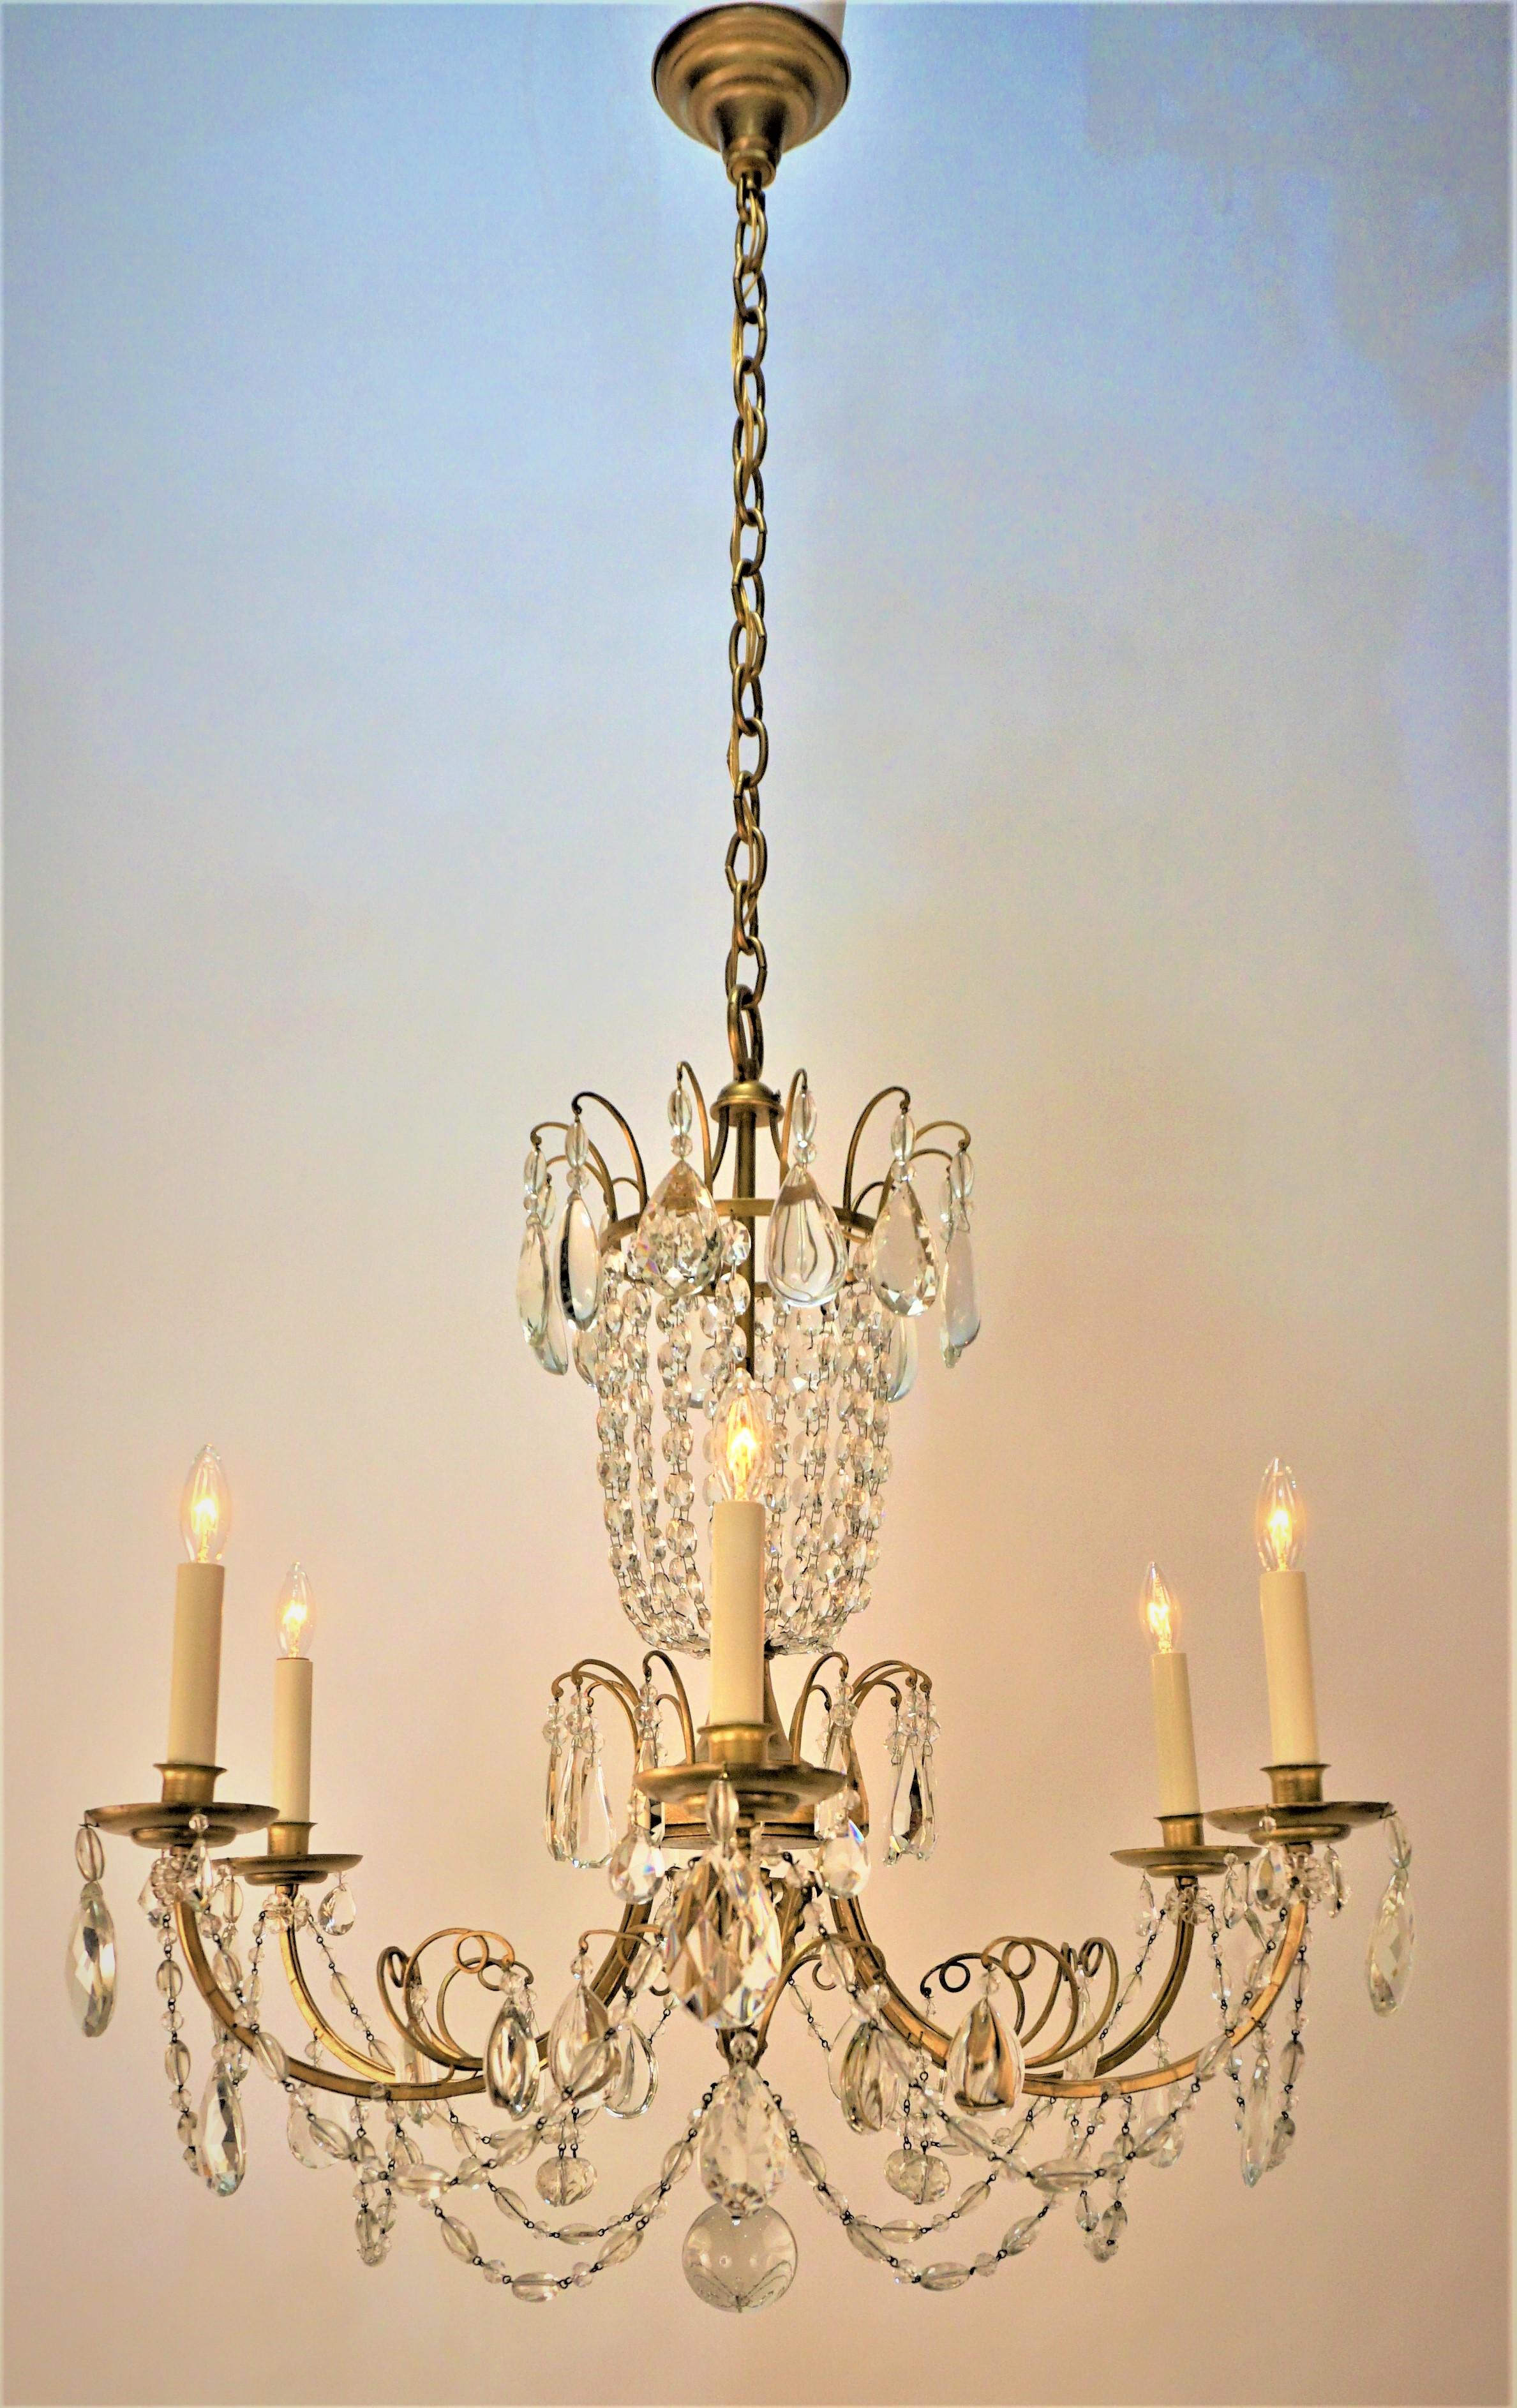 Lustre français à six bras en fer doré et cristal à facettes des années 1930
75 watts maximum par lampe.
Mesures : largeur 29